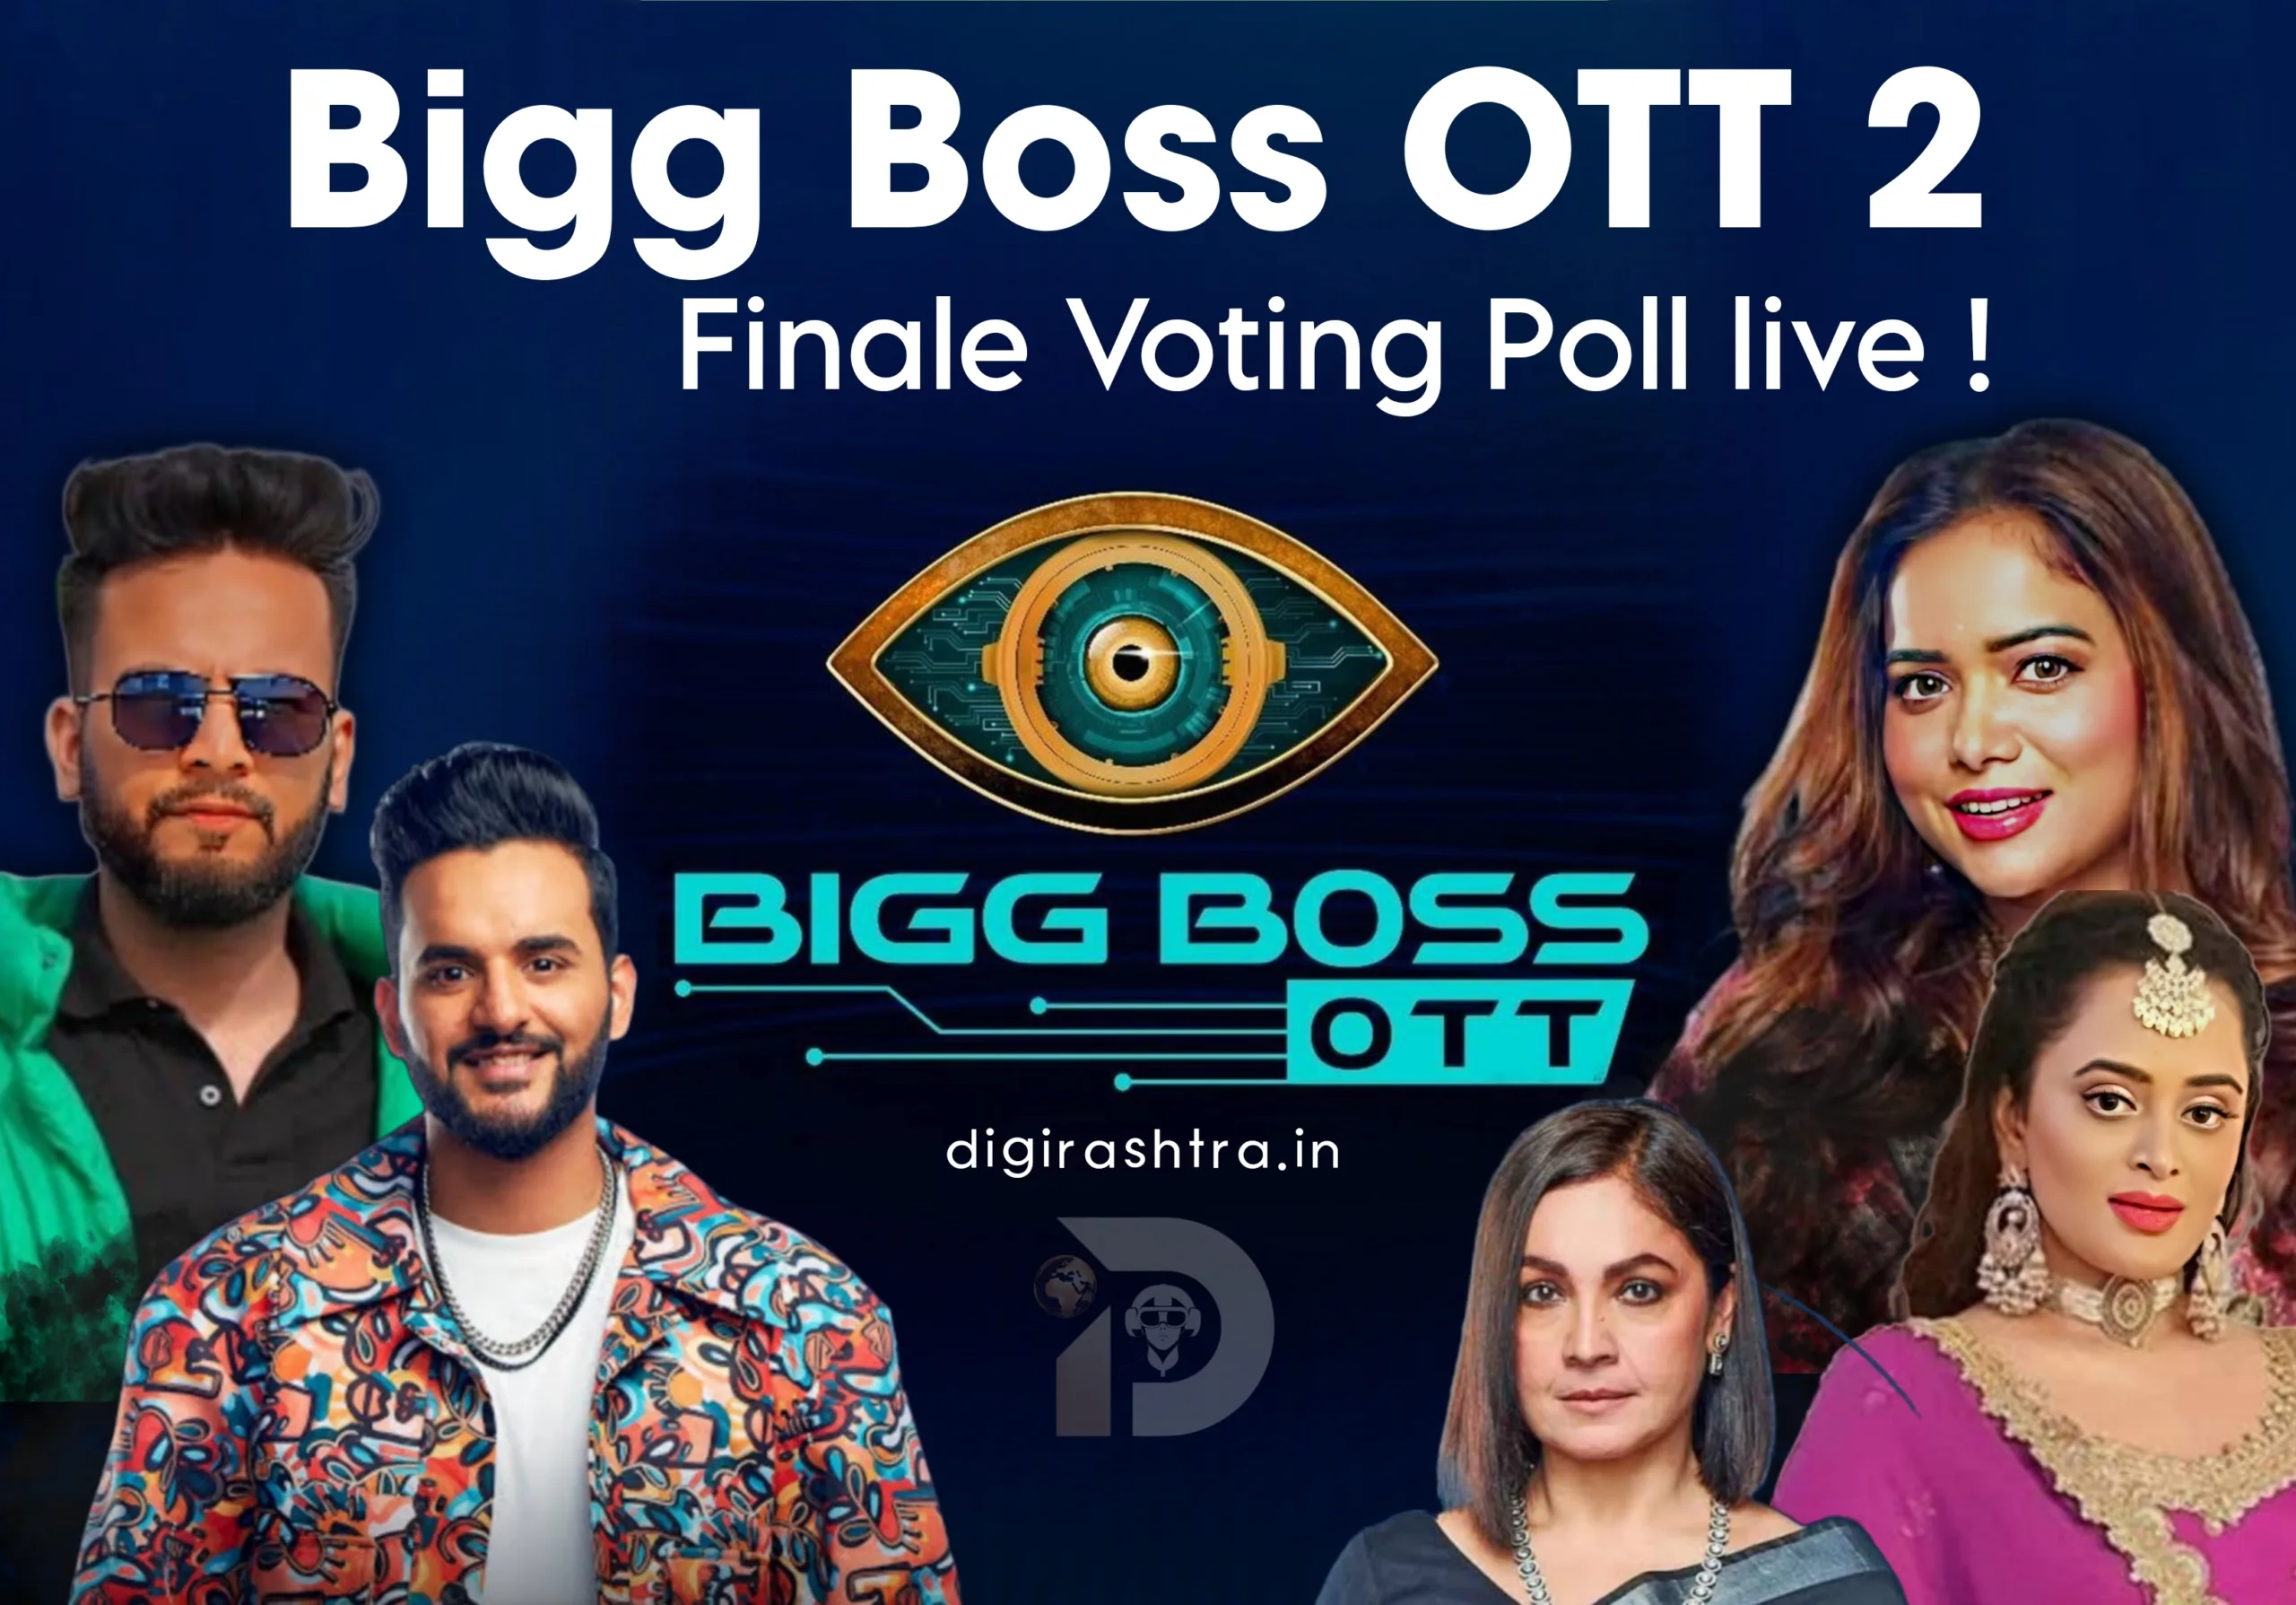 Bigg Boss Ott 2 Voting Poll Finale Digirashtra 